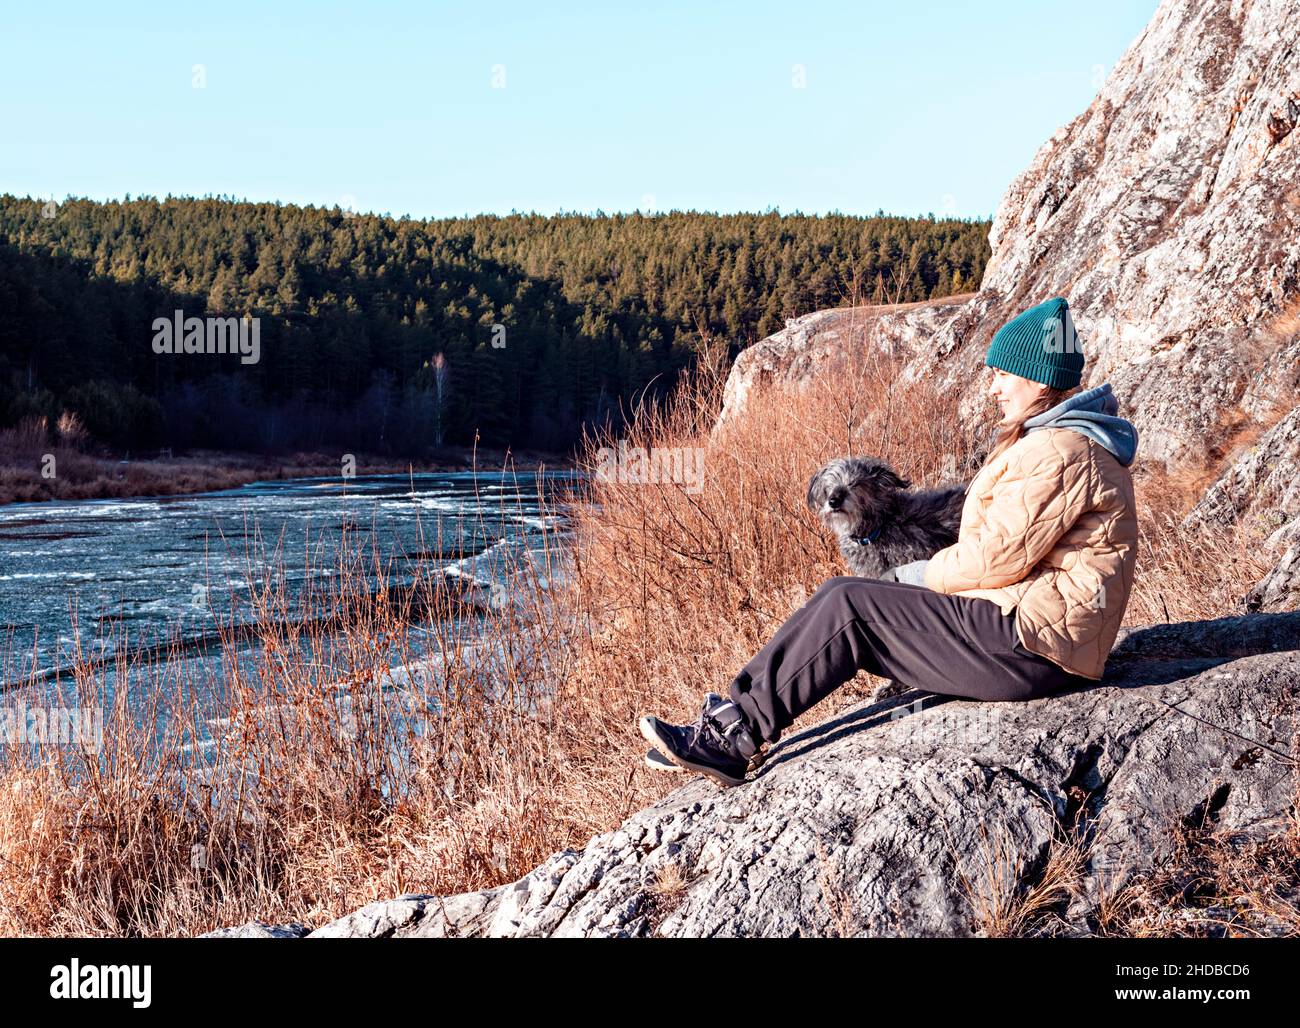 Mujer joven sentada en un perro abrazado de piedra mirando al río cubierto con el primer hielo en otoño o a principios de invierno, colores beige neutros, tonos tierra Foto de stock